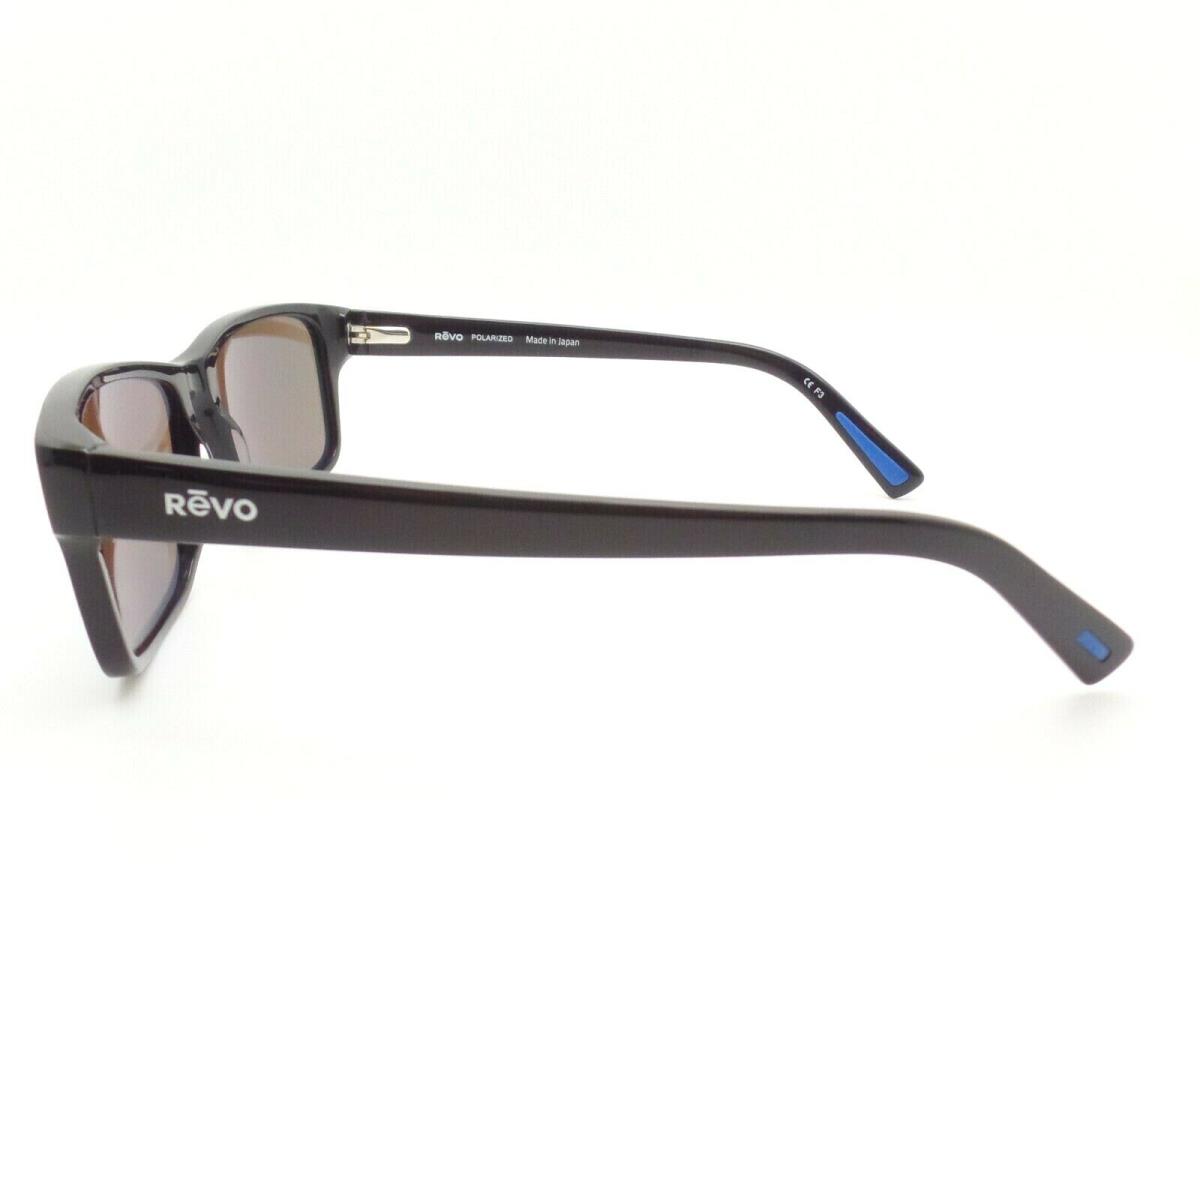 Revo sunglasses Finley - Black Gloss , Blue Water Lens